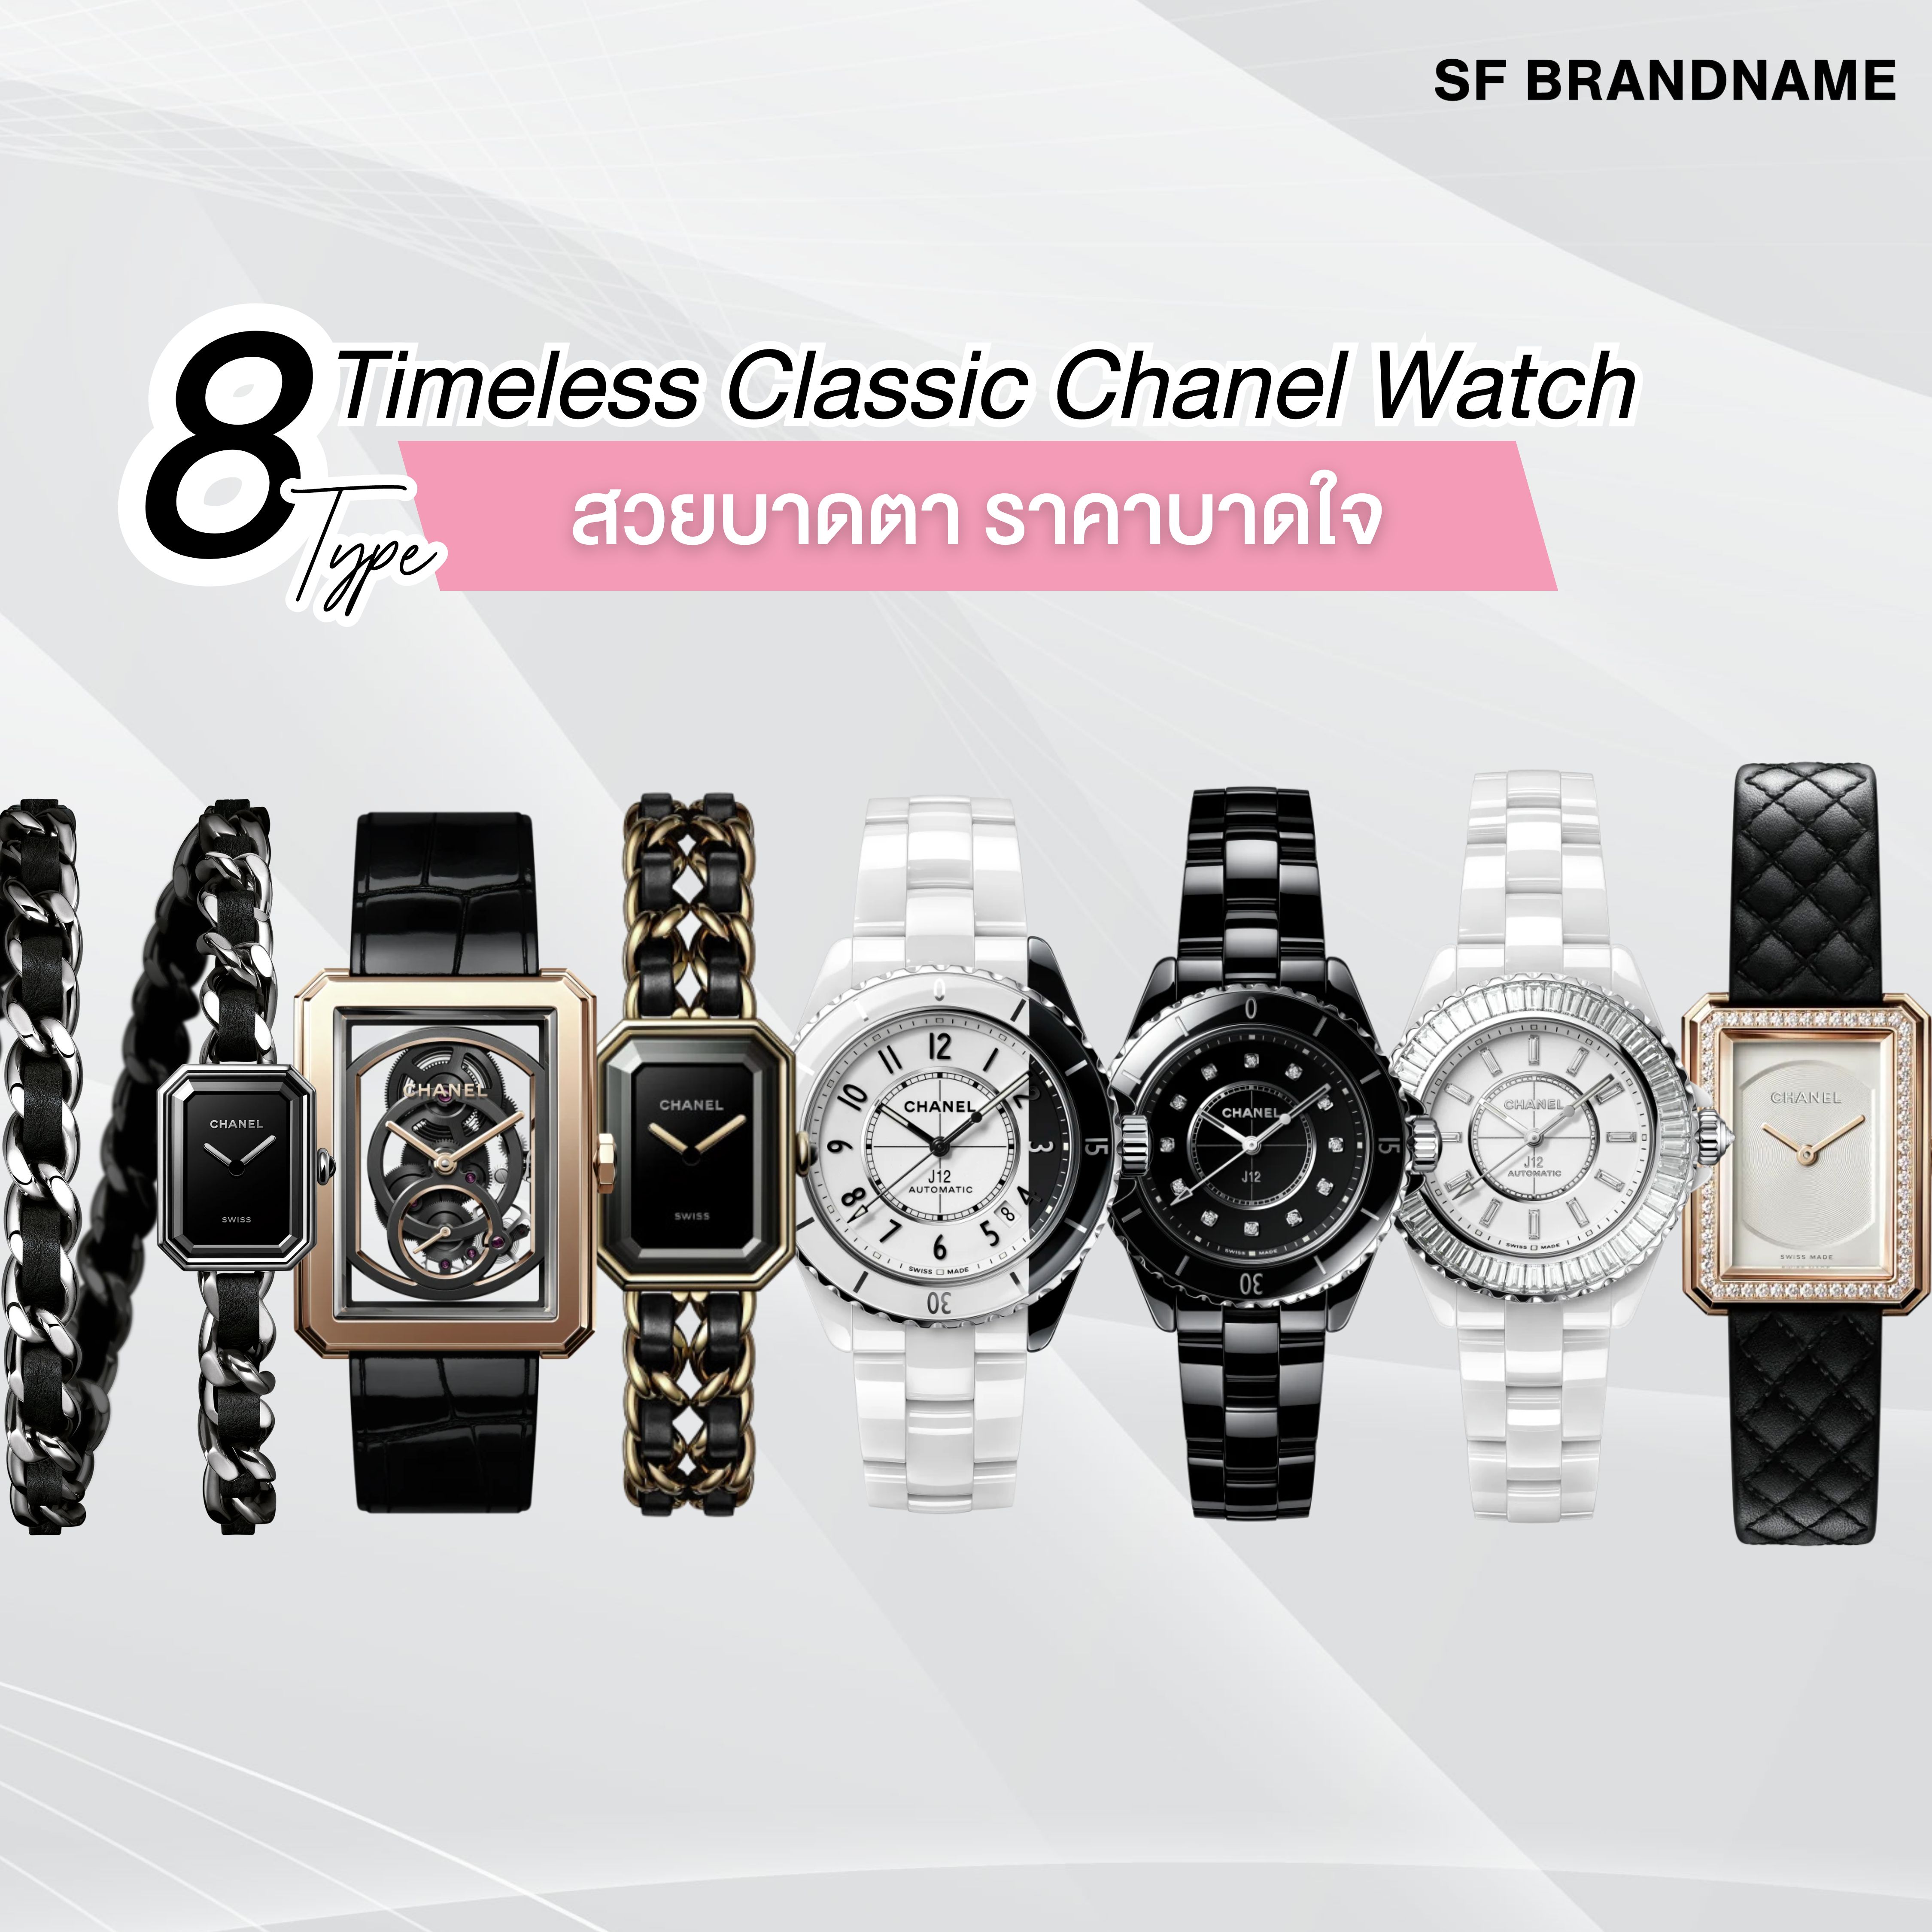 8 รุ่น Timeless Classic Chanel Watch สวยบาดตาราคาบาดใจ